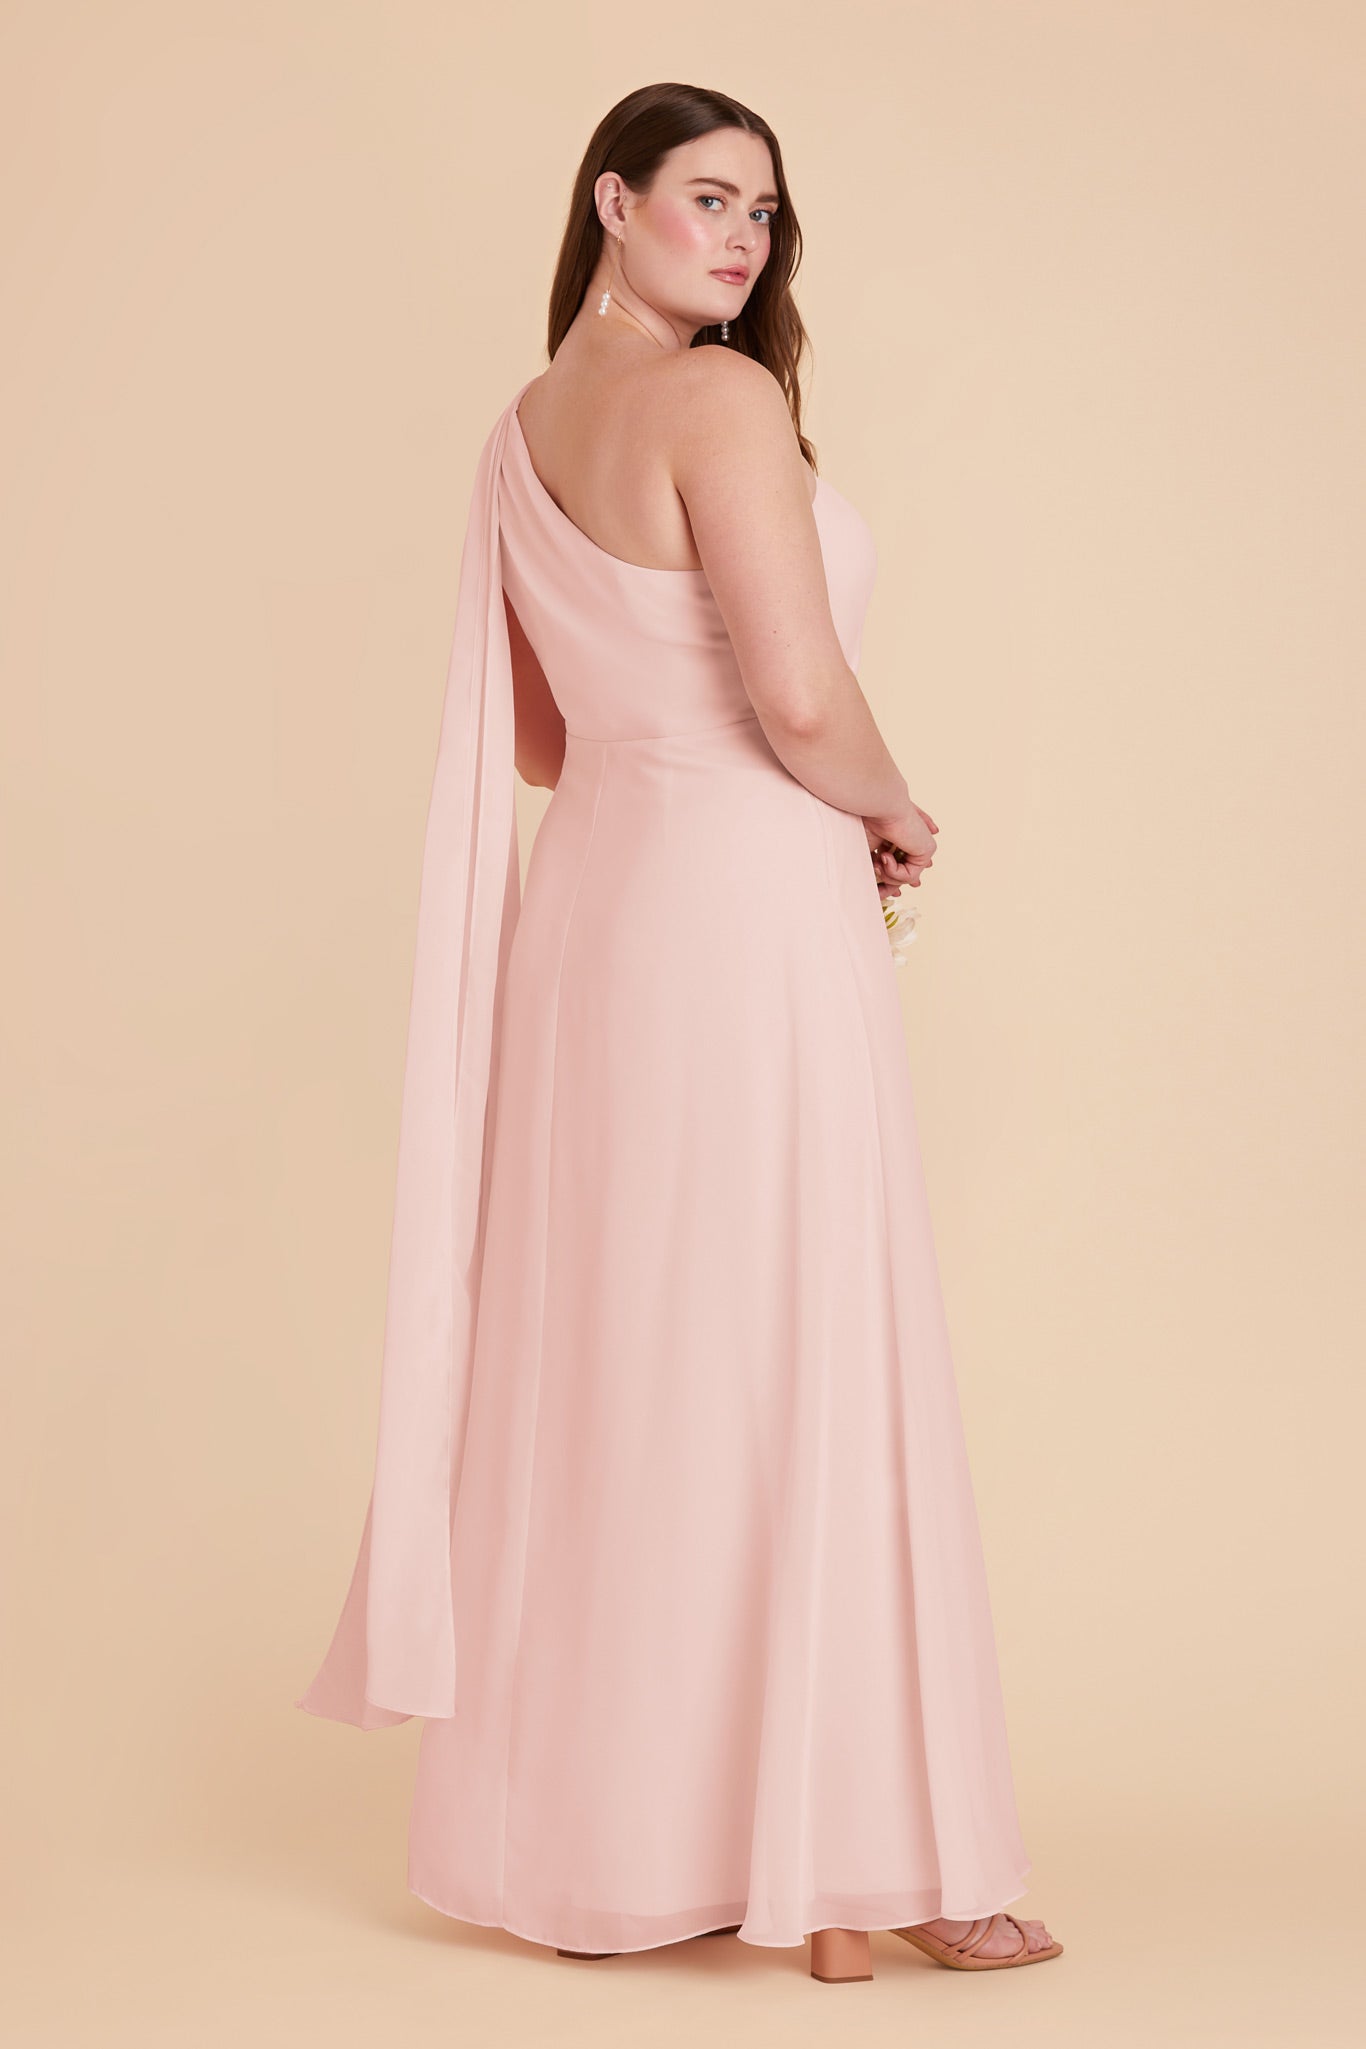 Blush Pink Melissa Chiffon Dress by Birdy Grey